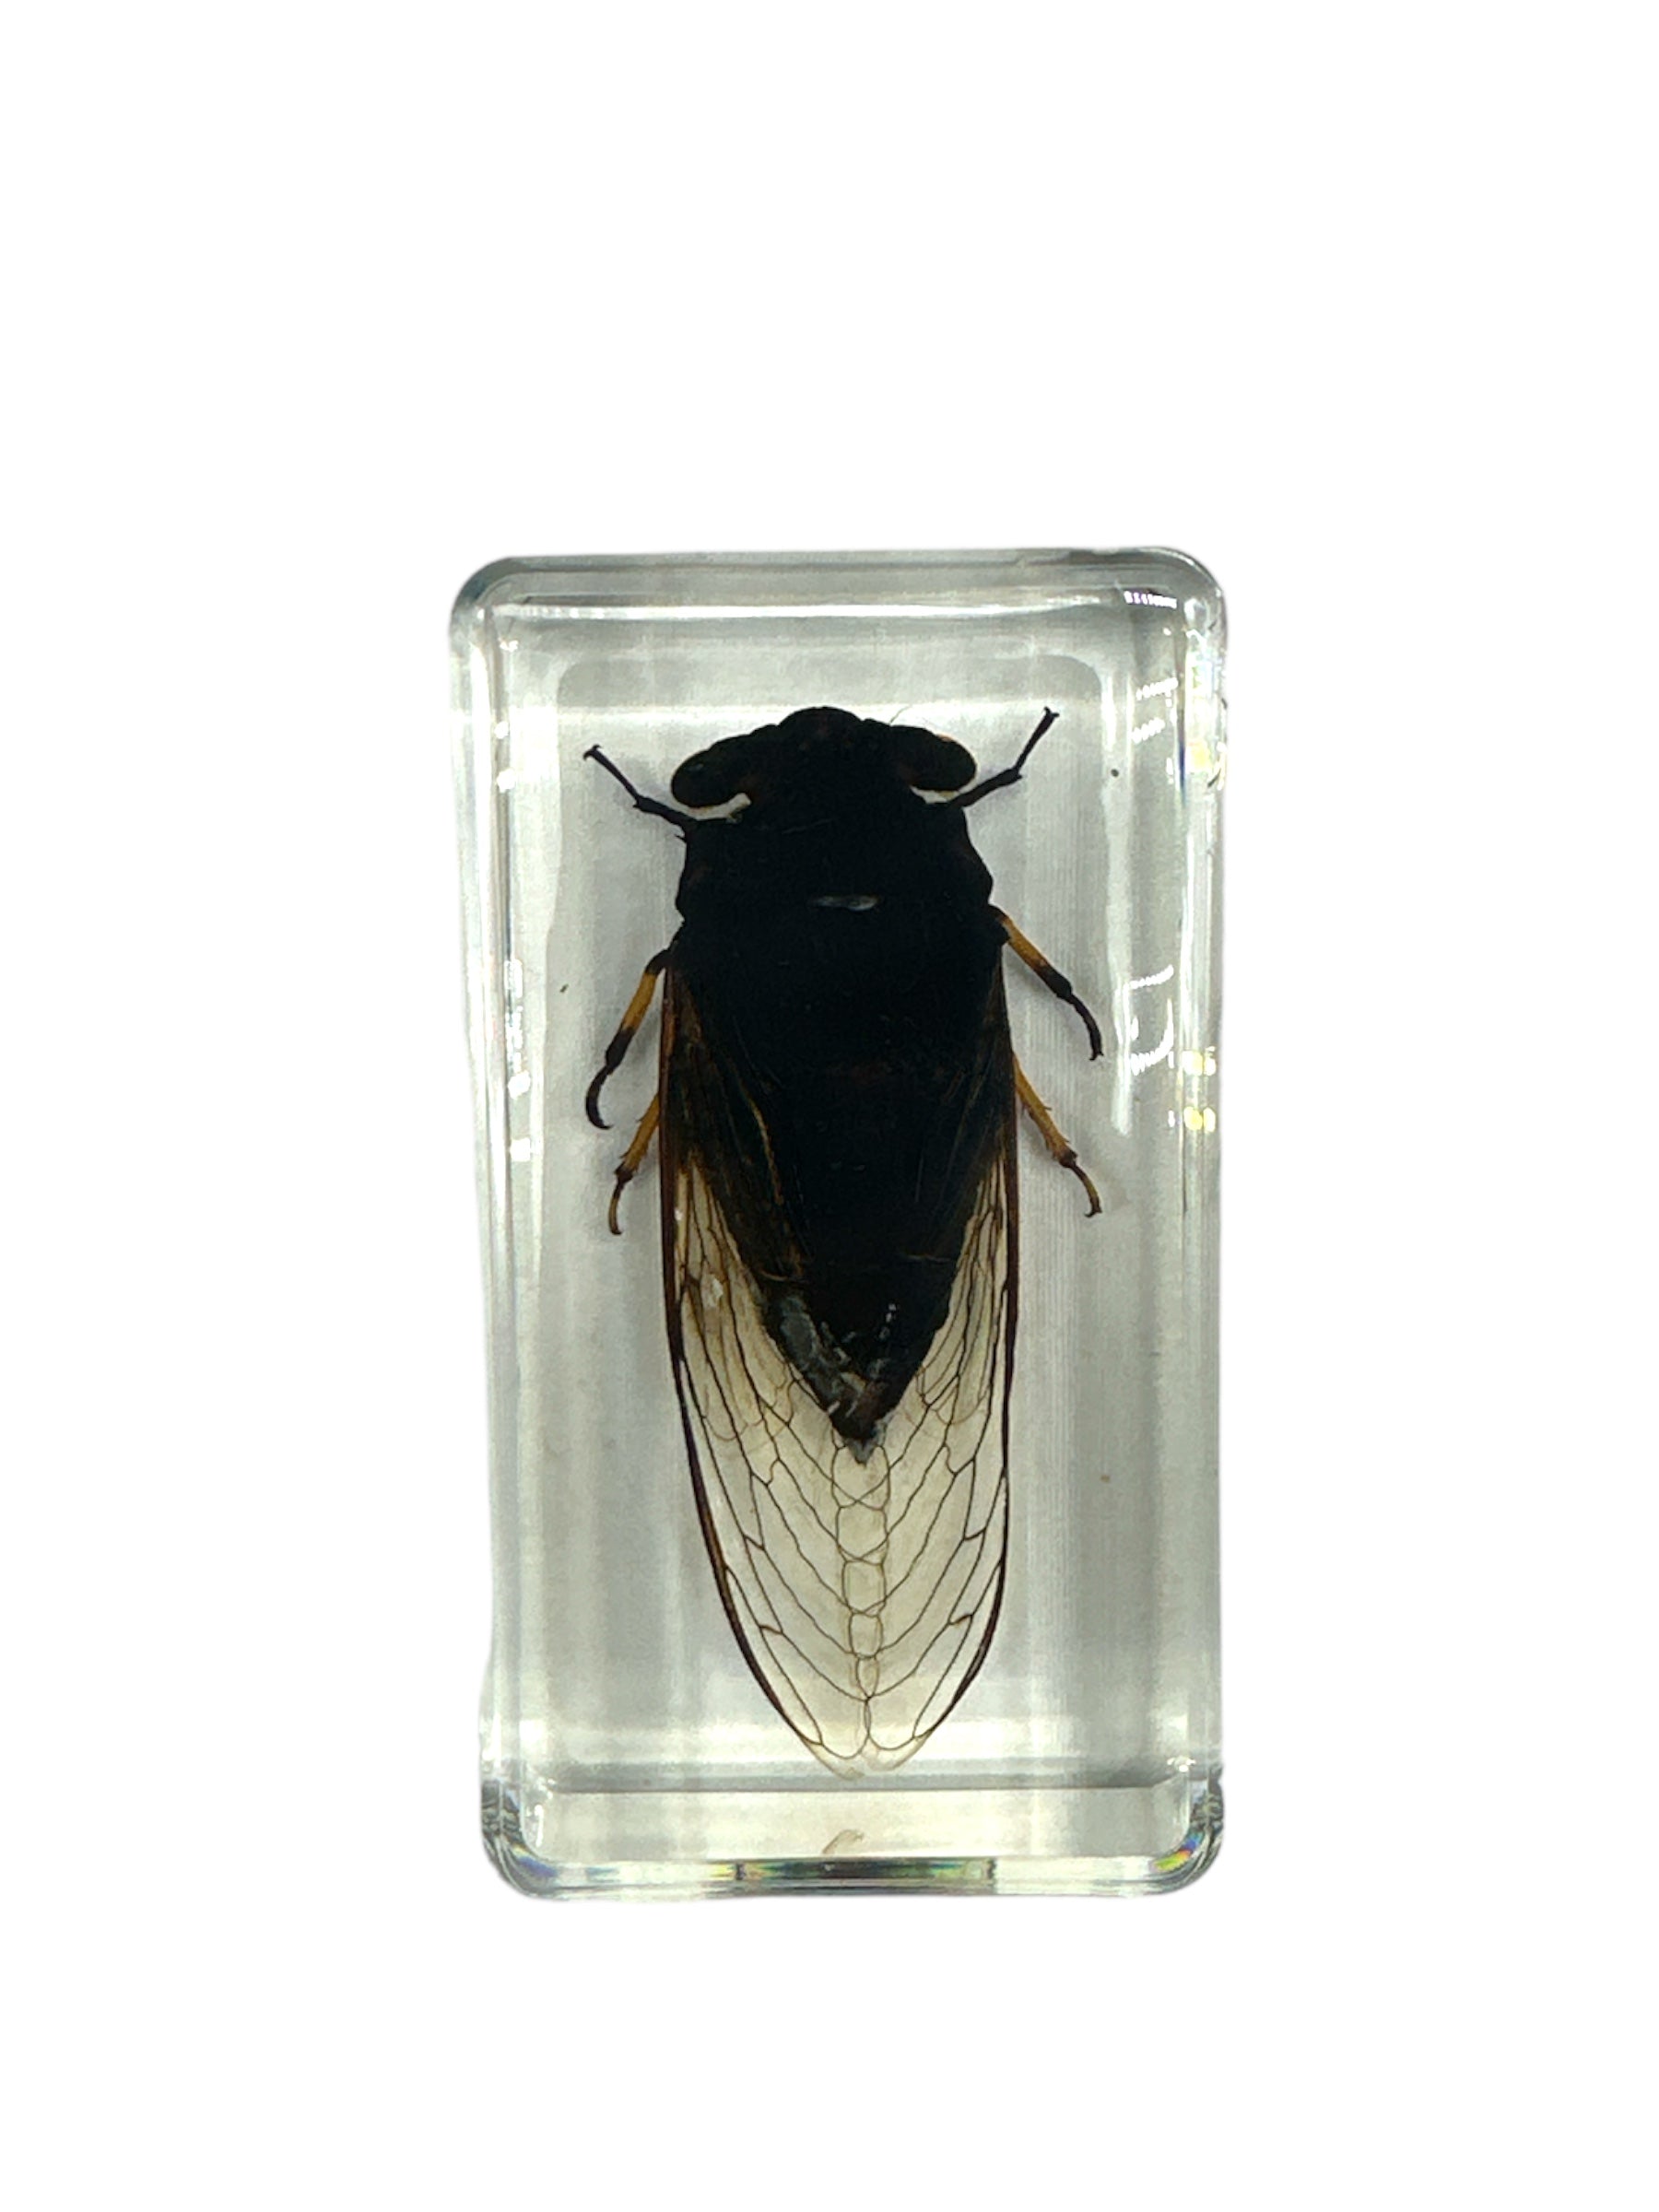 Black Cicada - Specimen In Resin